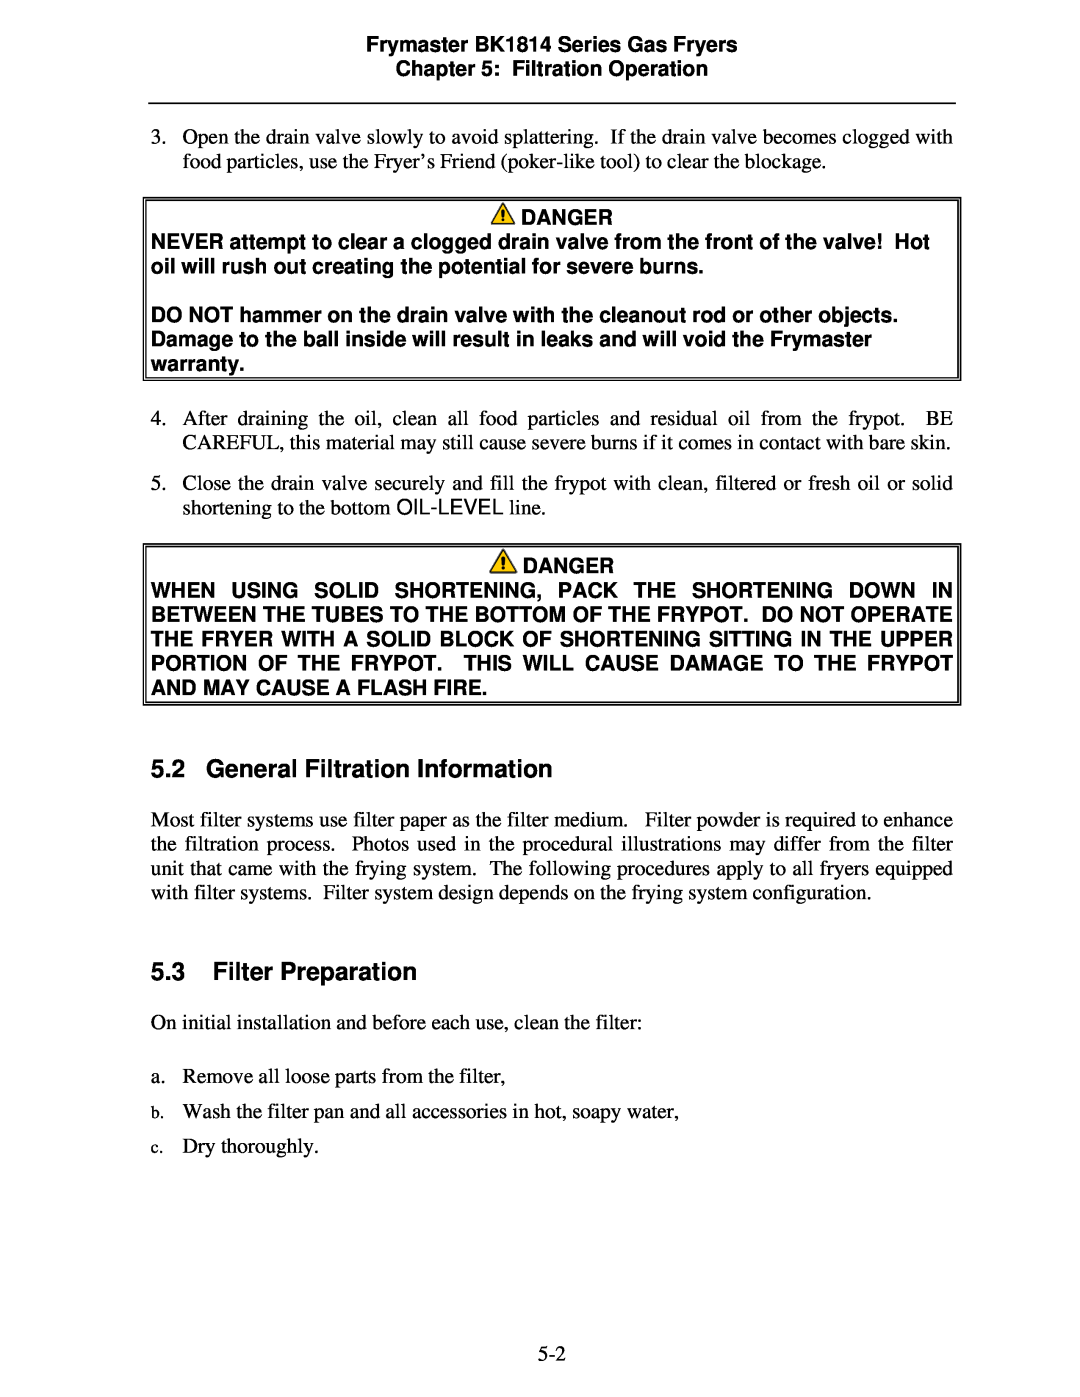 Frymaster BK1814 operation manual General Filtration Information, Filter Preparation 